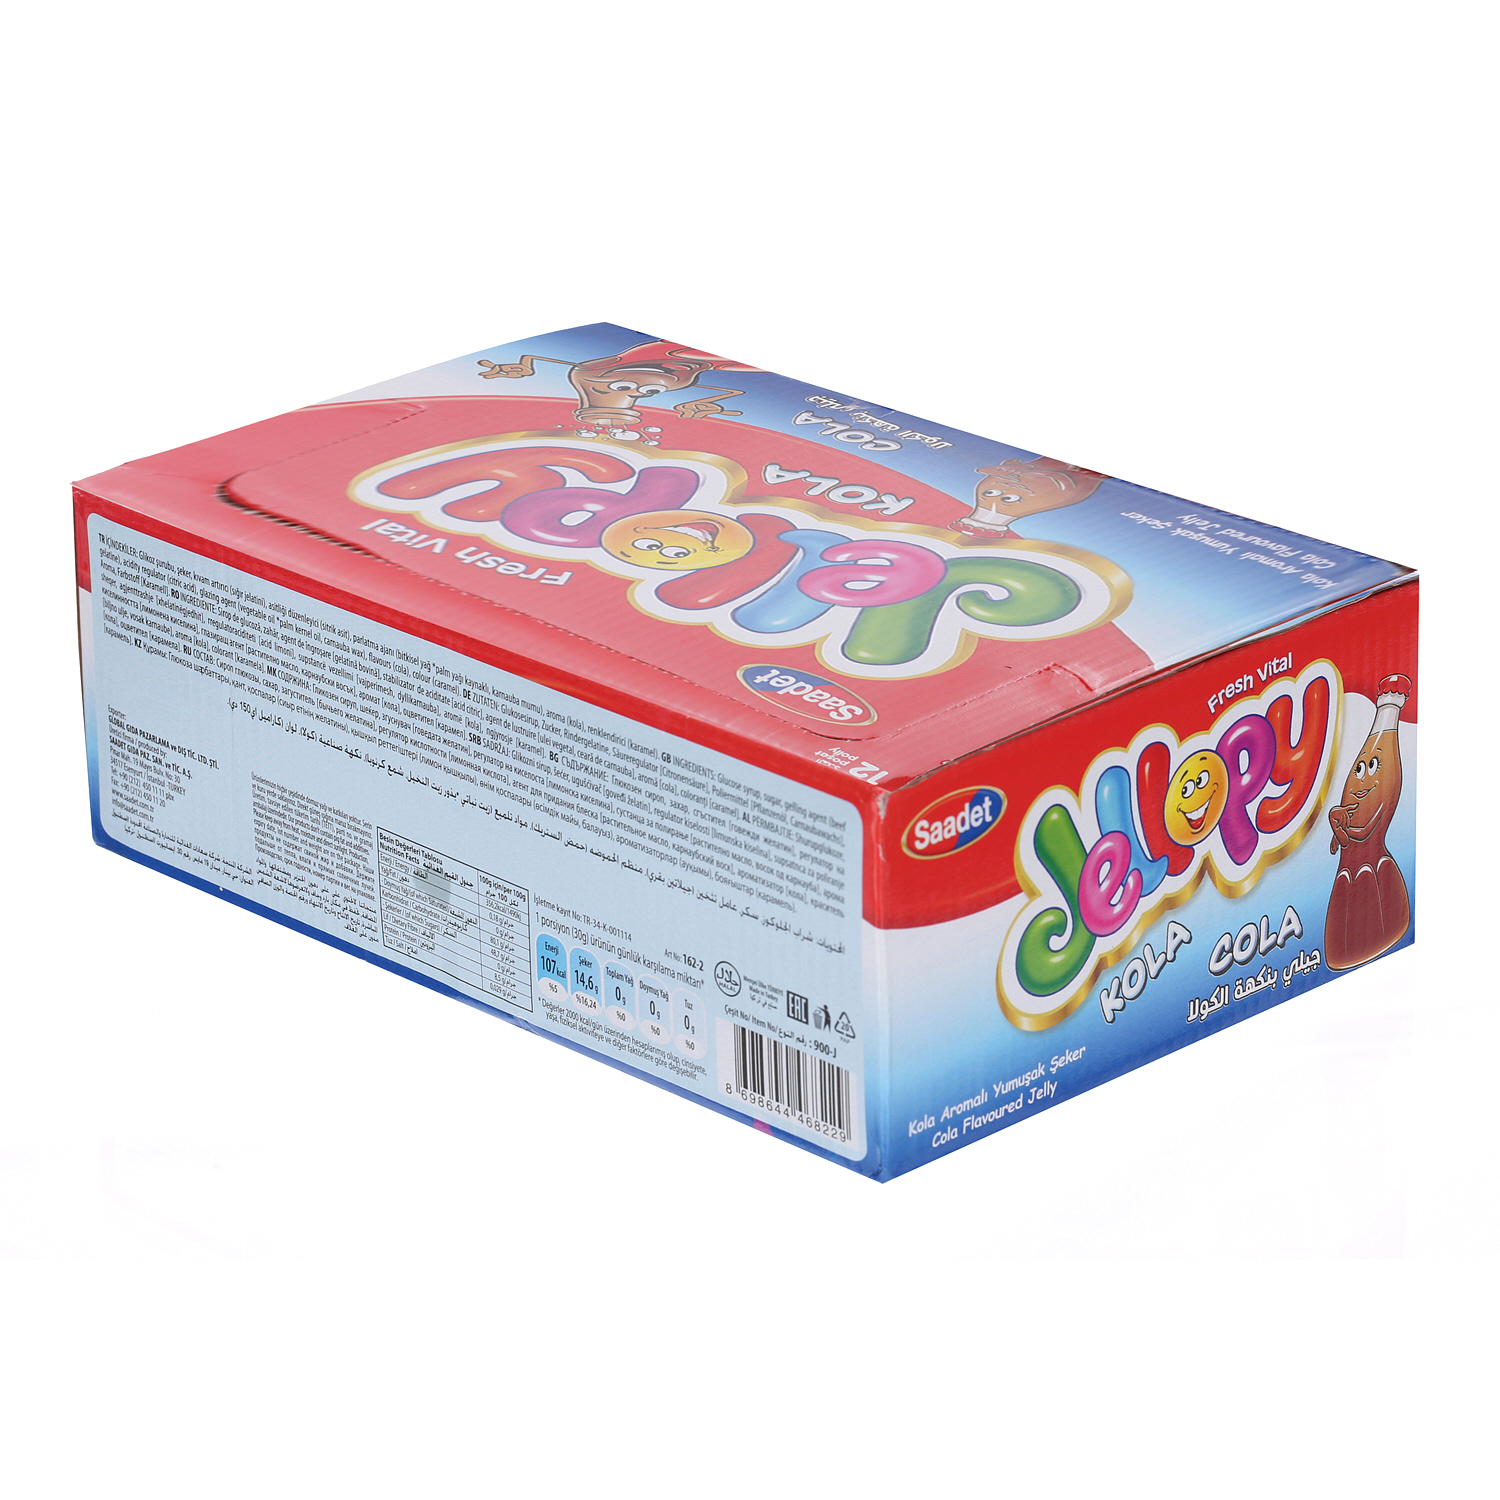 Yummy Gummy Cola Jelly 10gm × 12'S